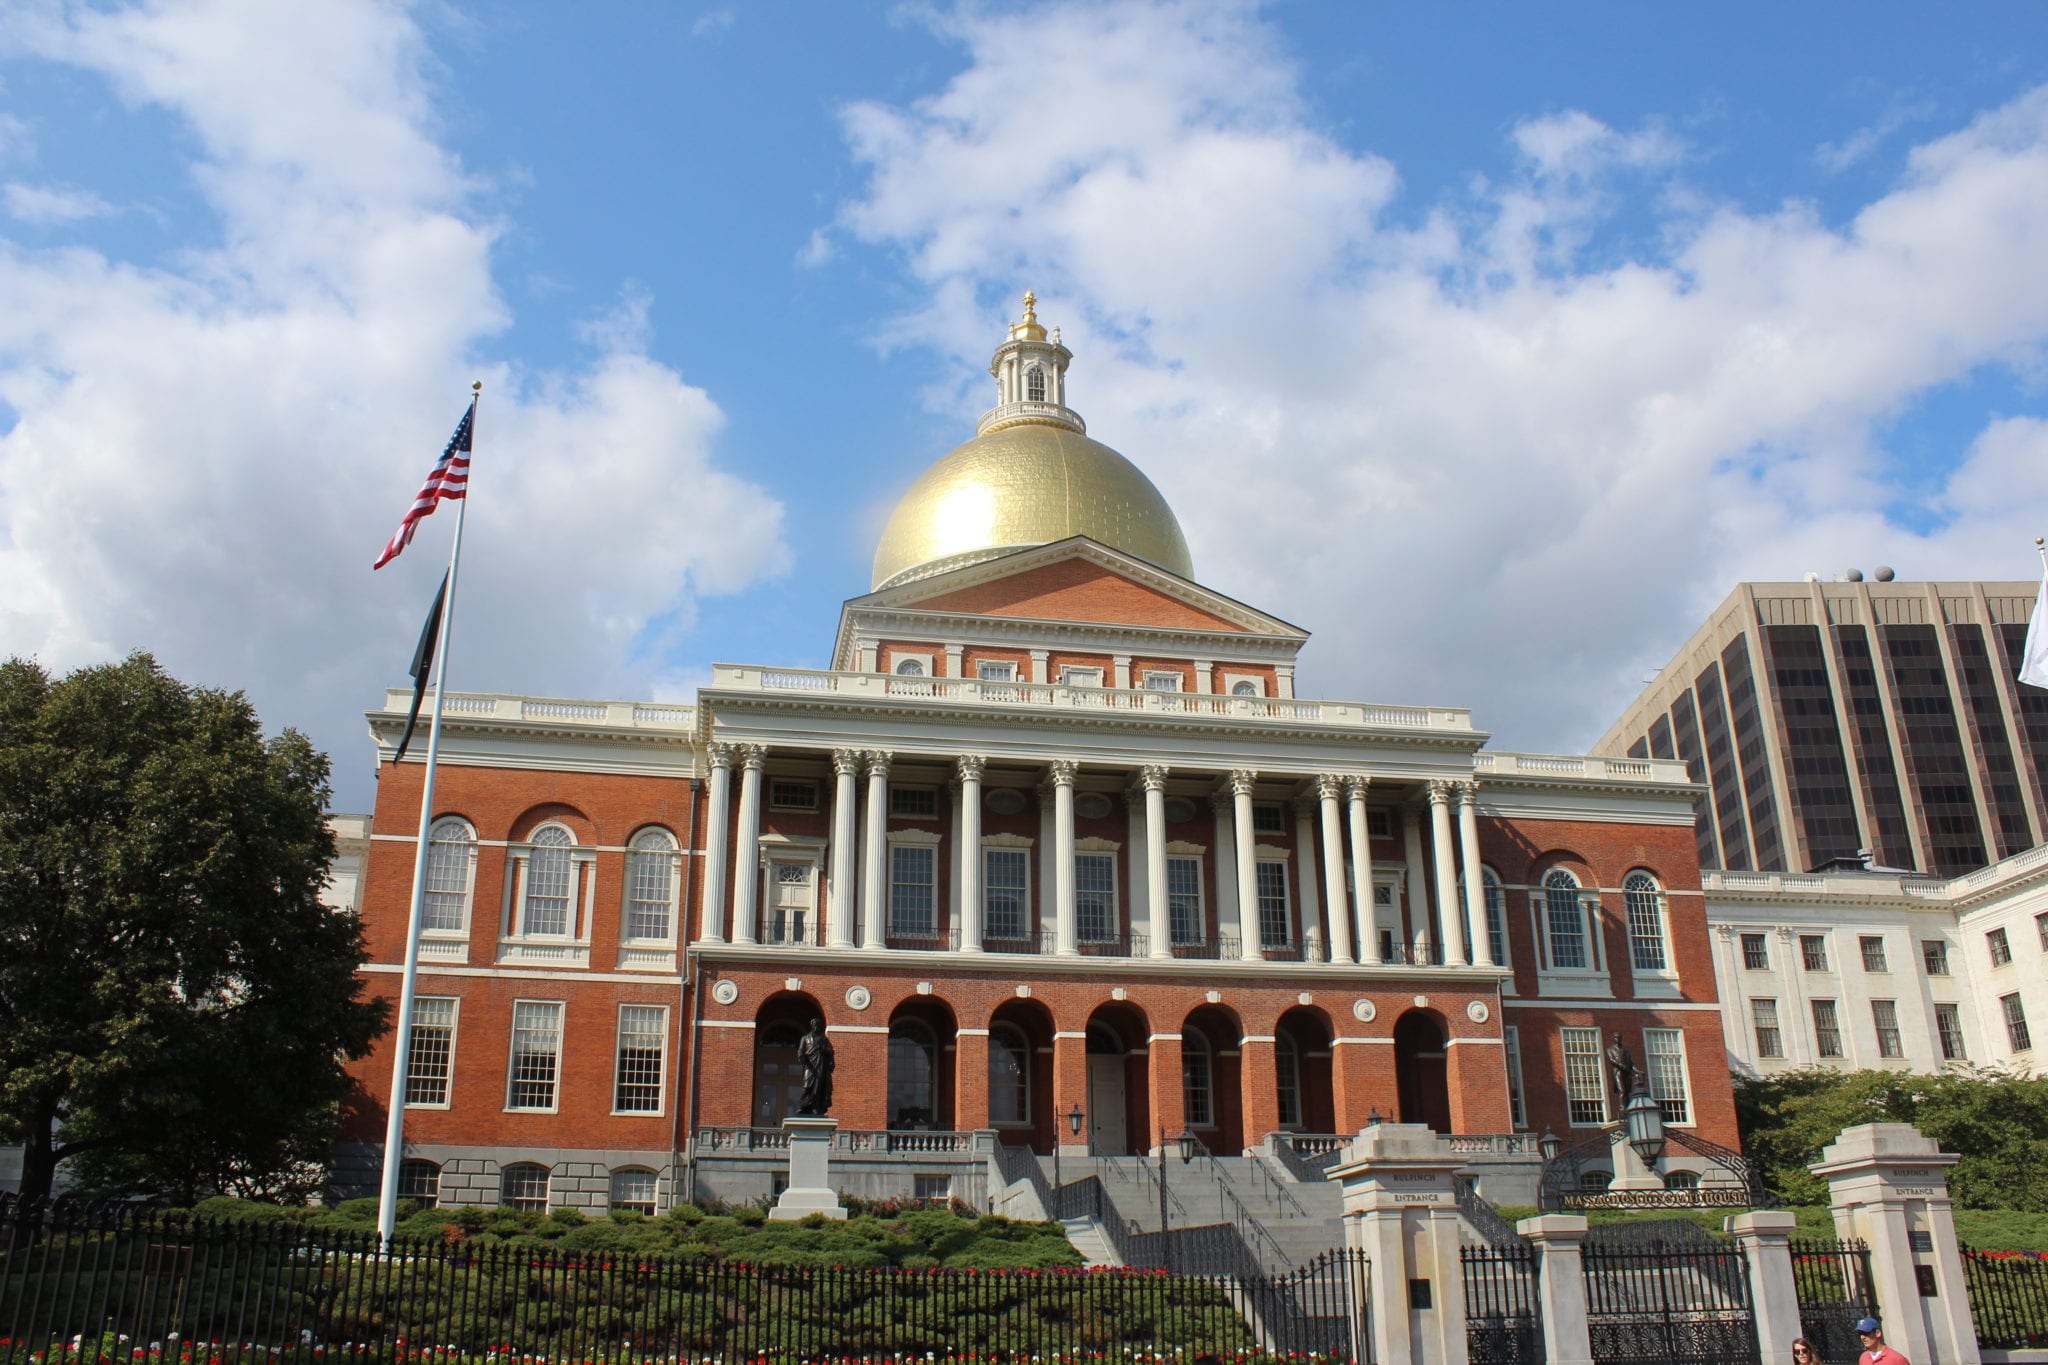 https://commons.wikimedia.org/wiki/File:Massachusetts_state_house.jpg